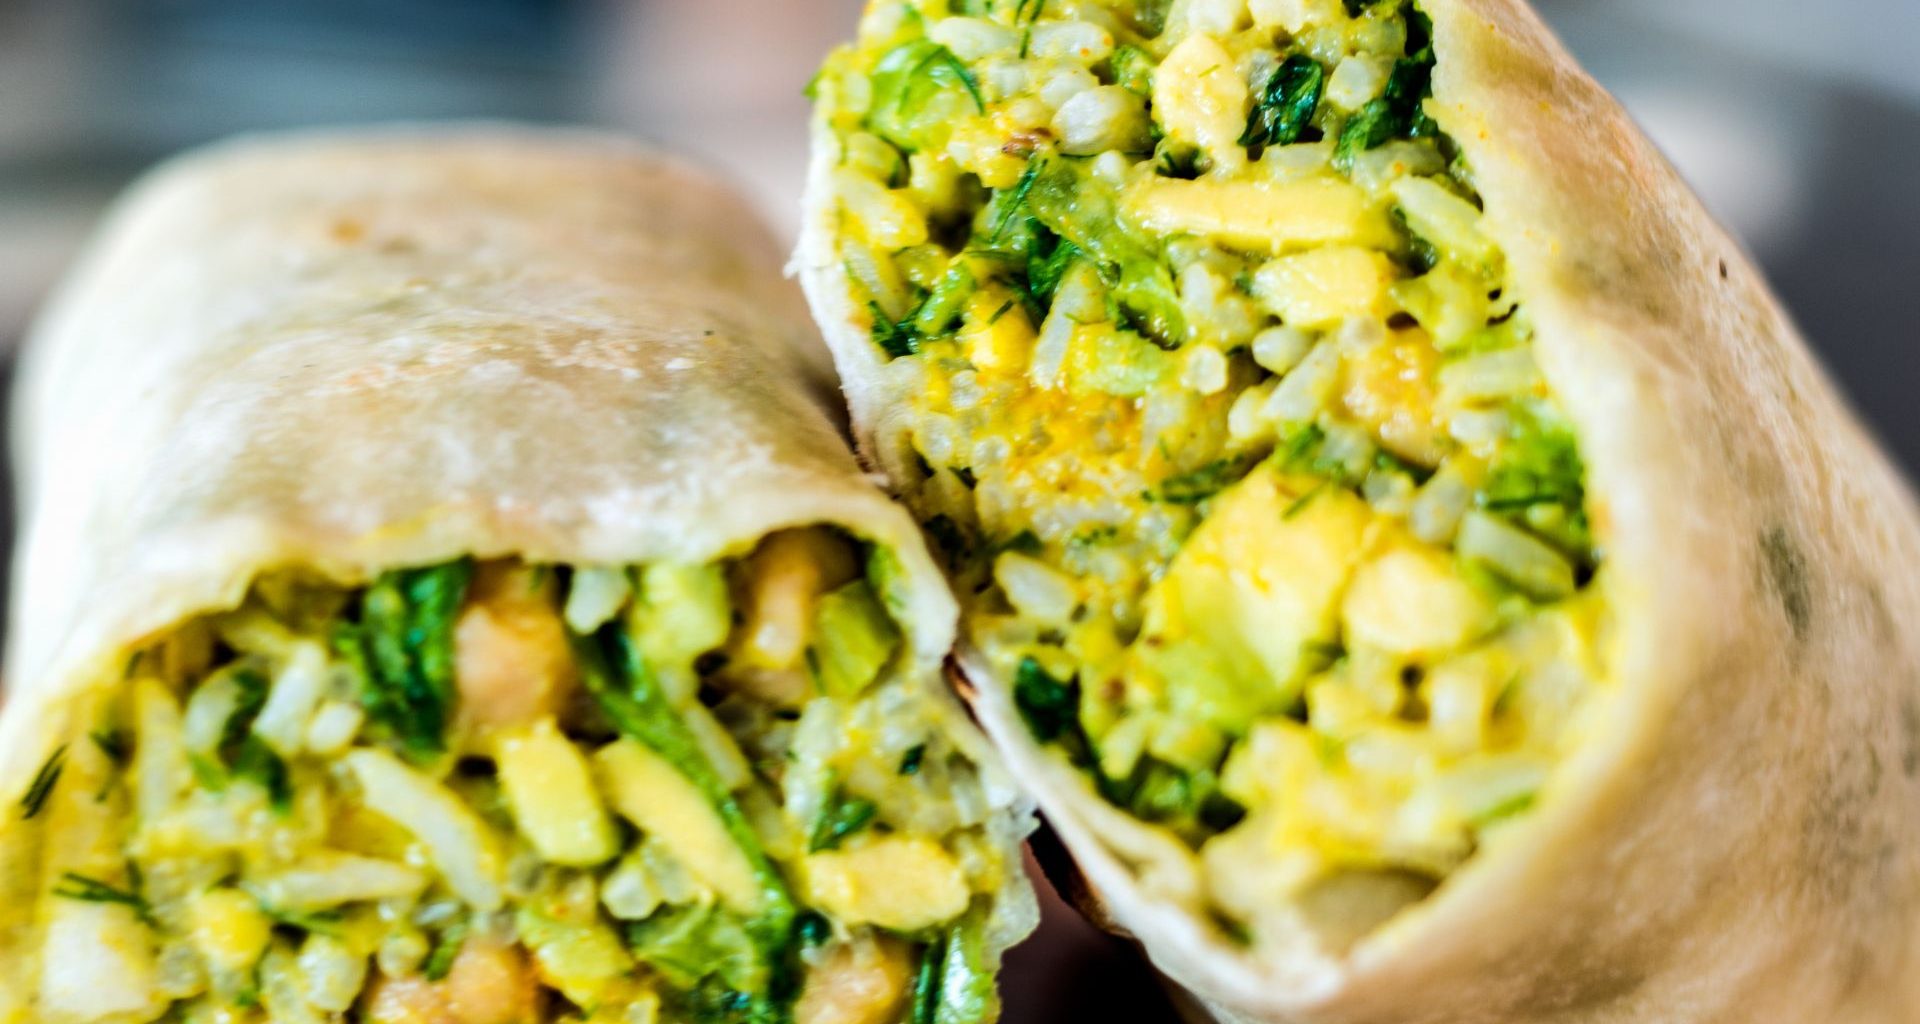 Tak może wyglądać wegańskie burrito z fasolką i zielonymi warzywami.